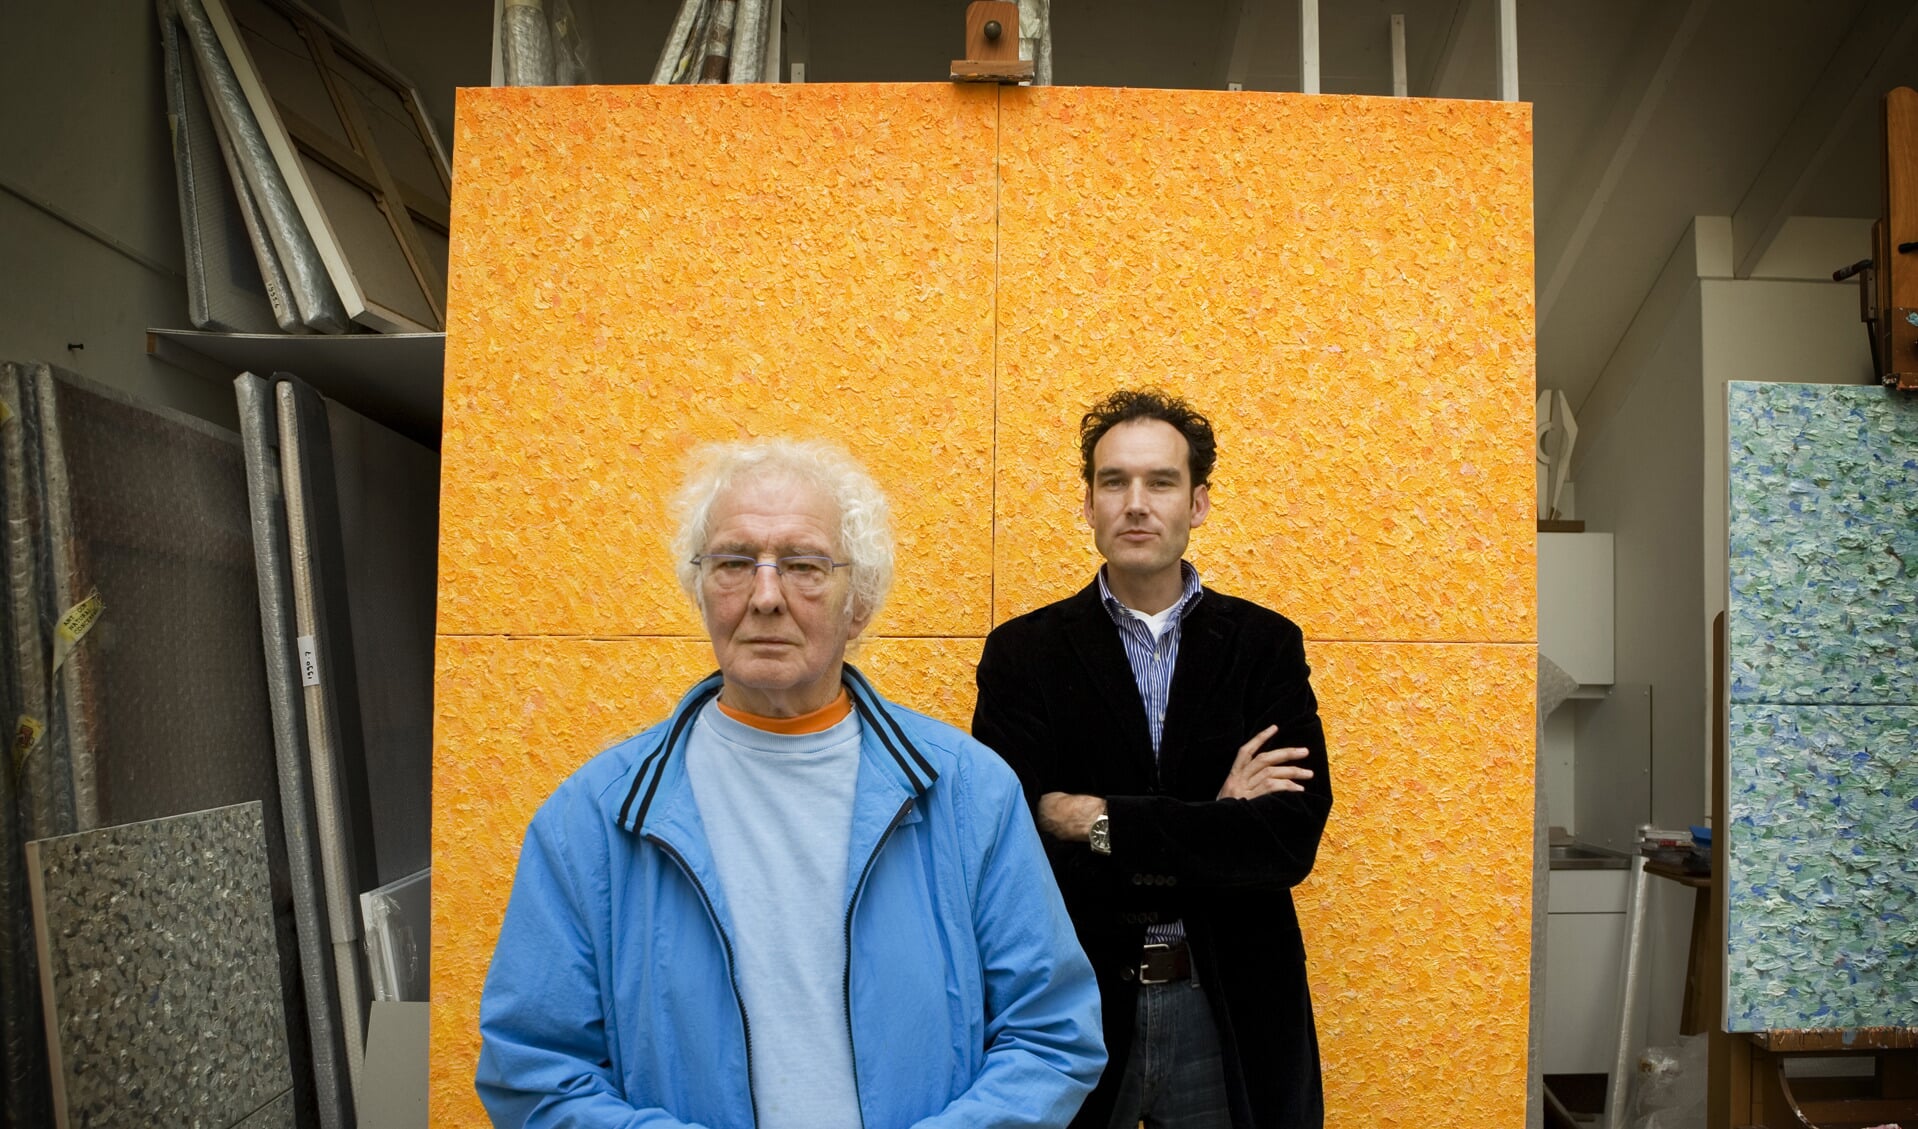 Jan Wolkers en Onno Blom voor ‘het grote gele doek’  foto: Tessa Posthuma de Boer